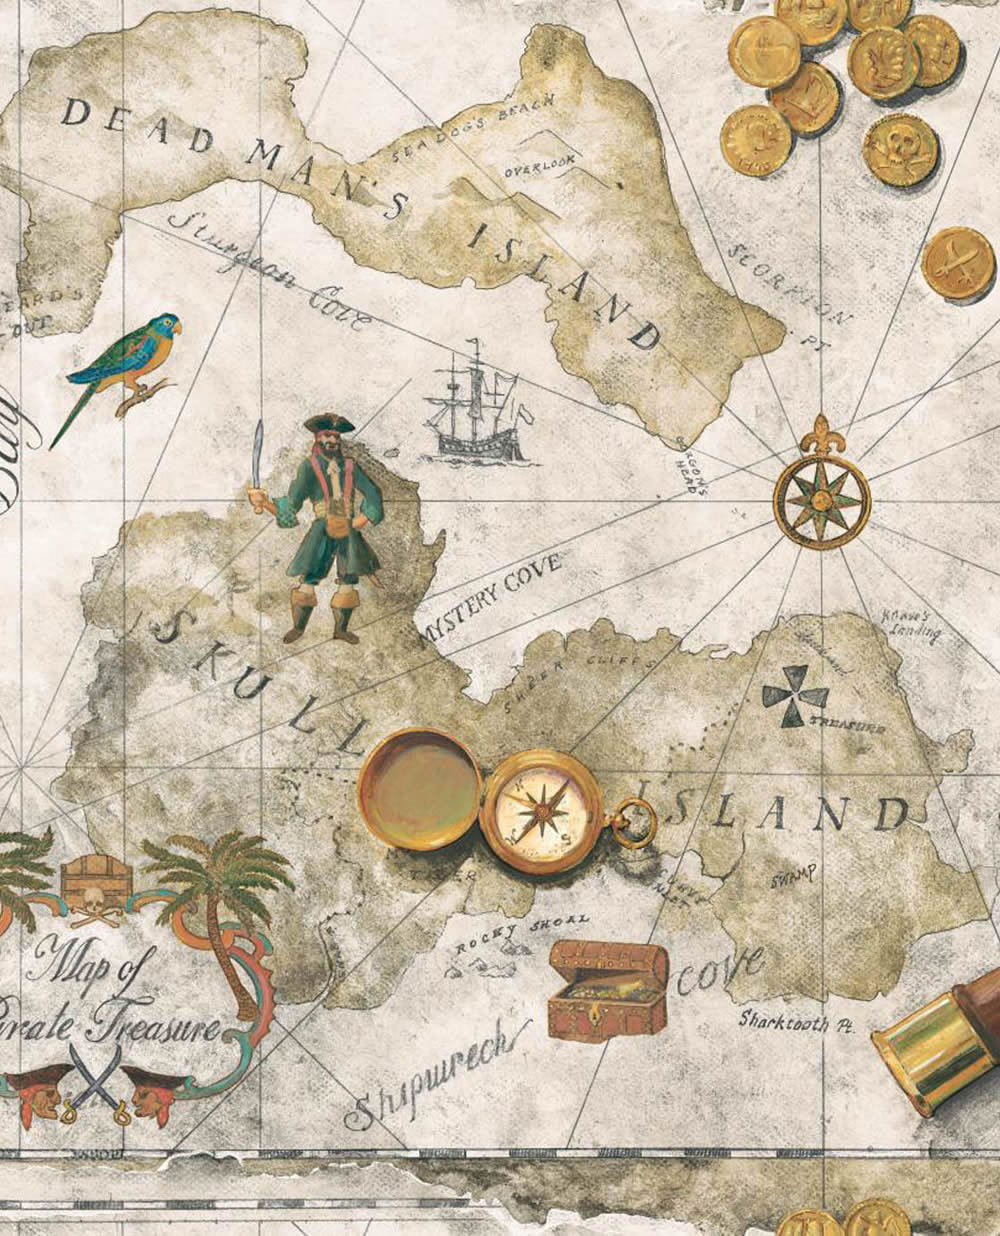 Pirate Treasure Chest Map - HD Wallpaper 